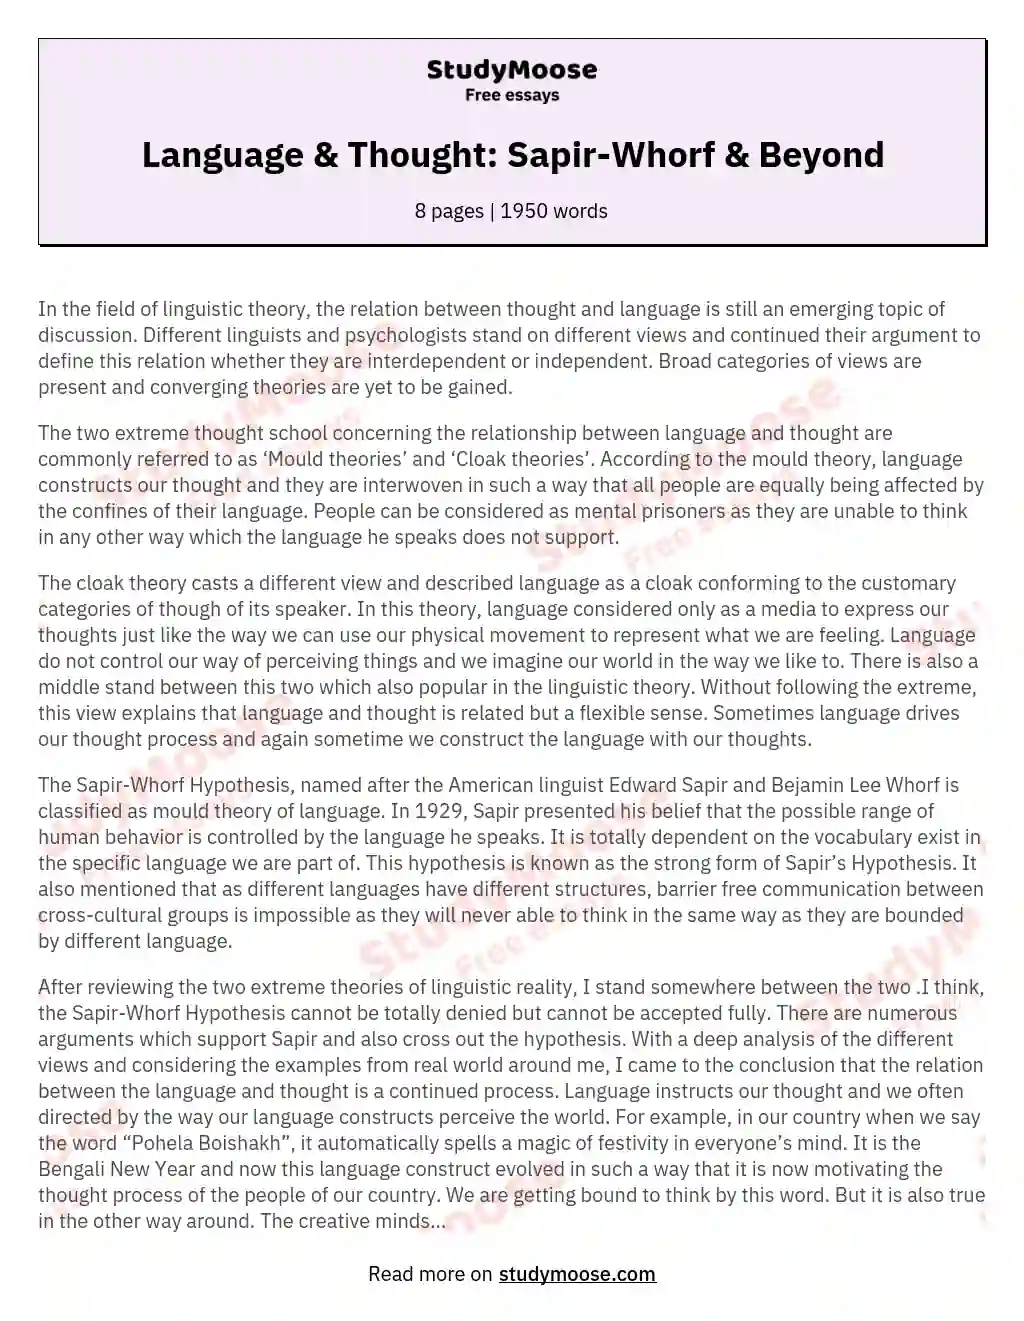 Language & Thought: Sapir-Whorf & Beyond essay